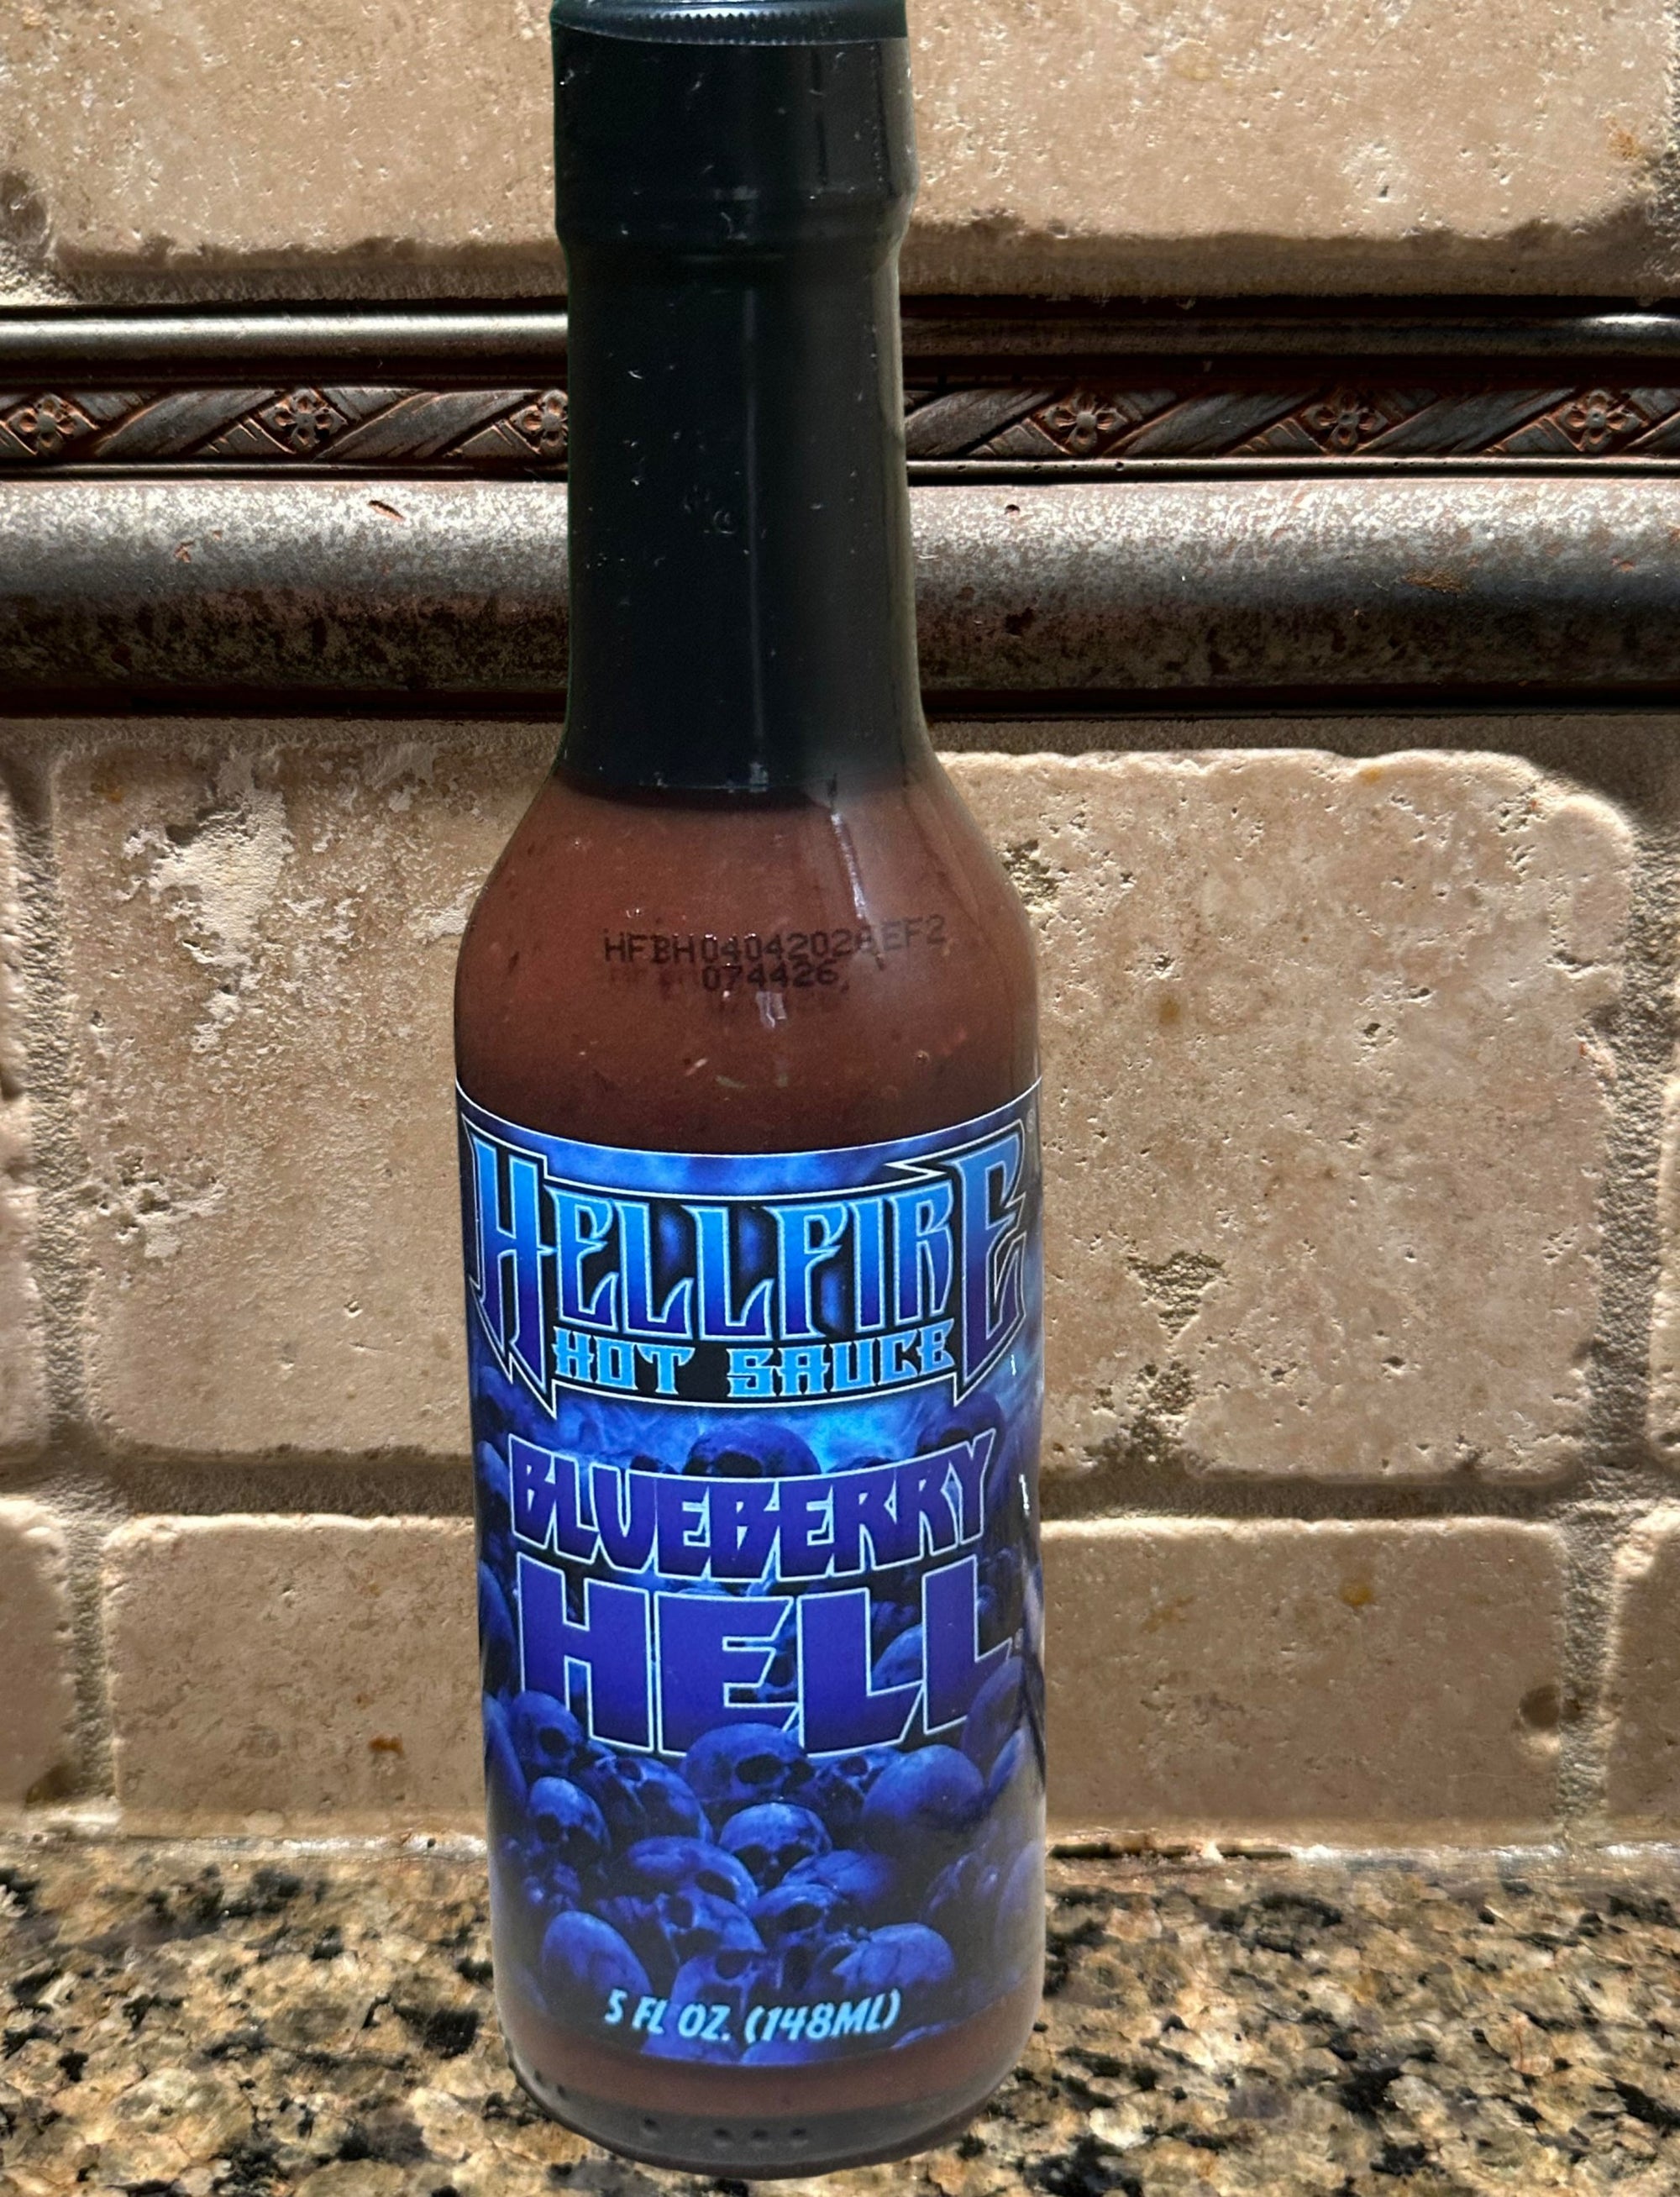 Hellfire Blueberry Hell Hot Sauce